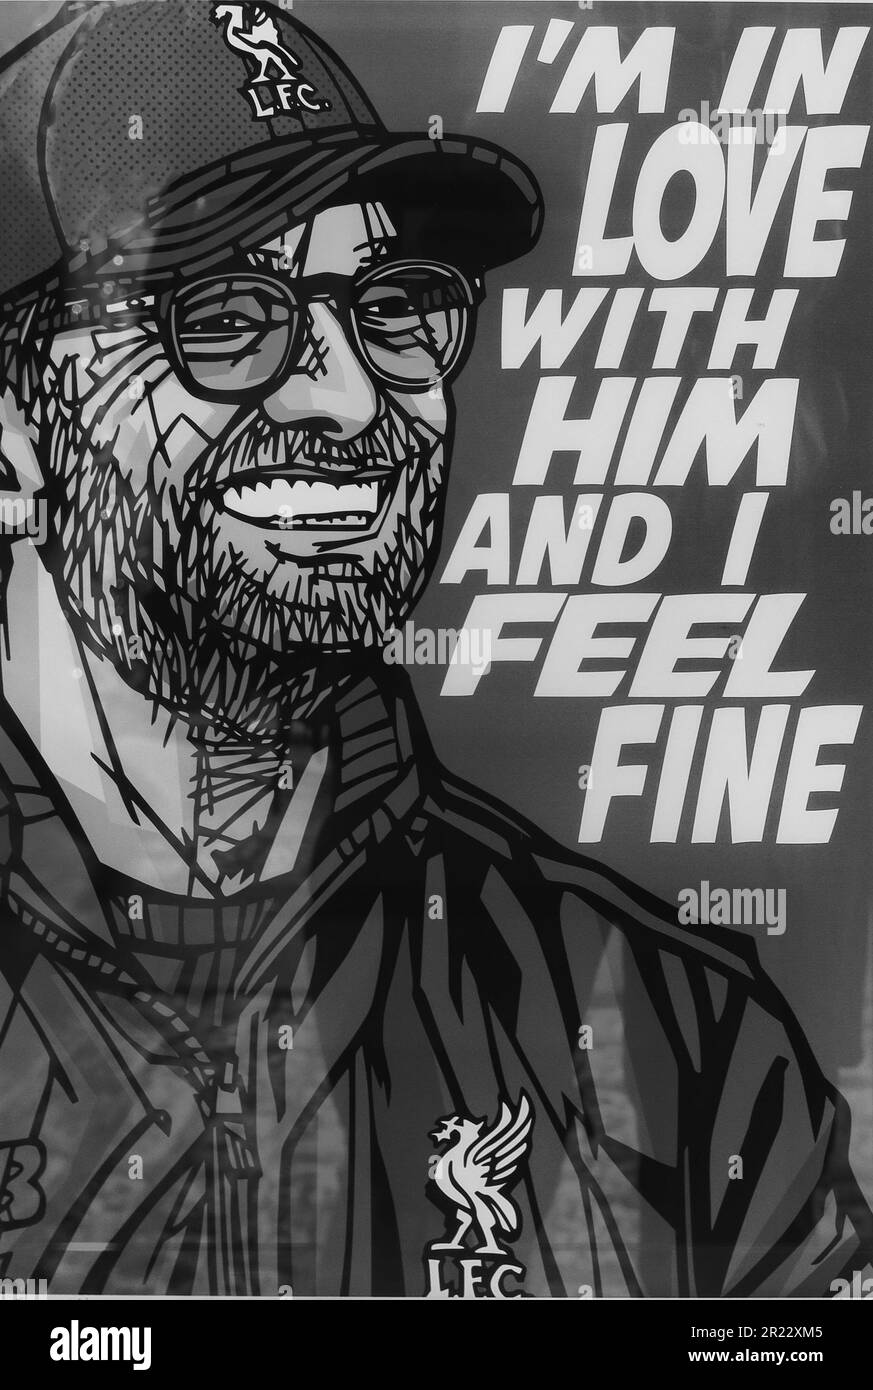 Klopp The Mainzer, LFC Liverpool football Club Manager sketch art - Je suis amoureux de lui et je me sens bien - Beatles lyric de je me sens bien Banque D'Images